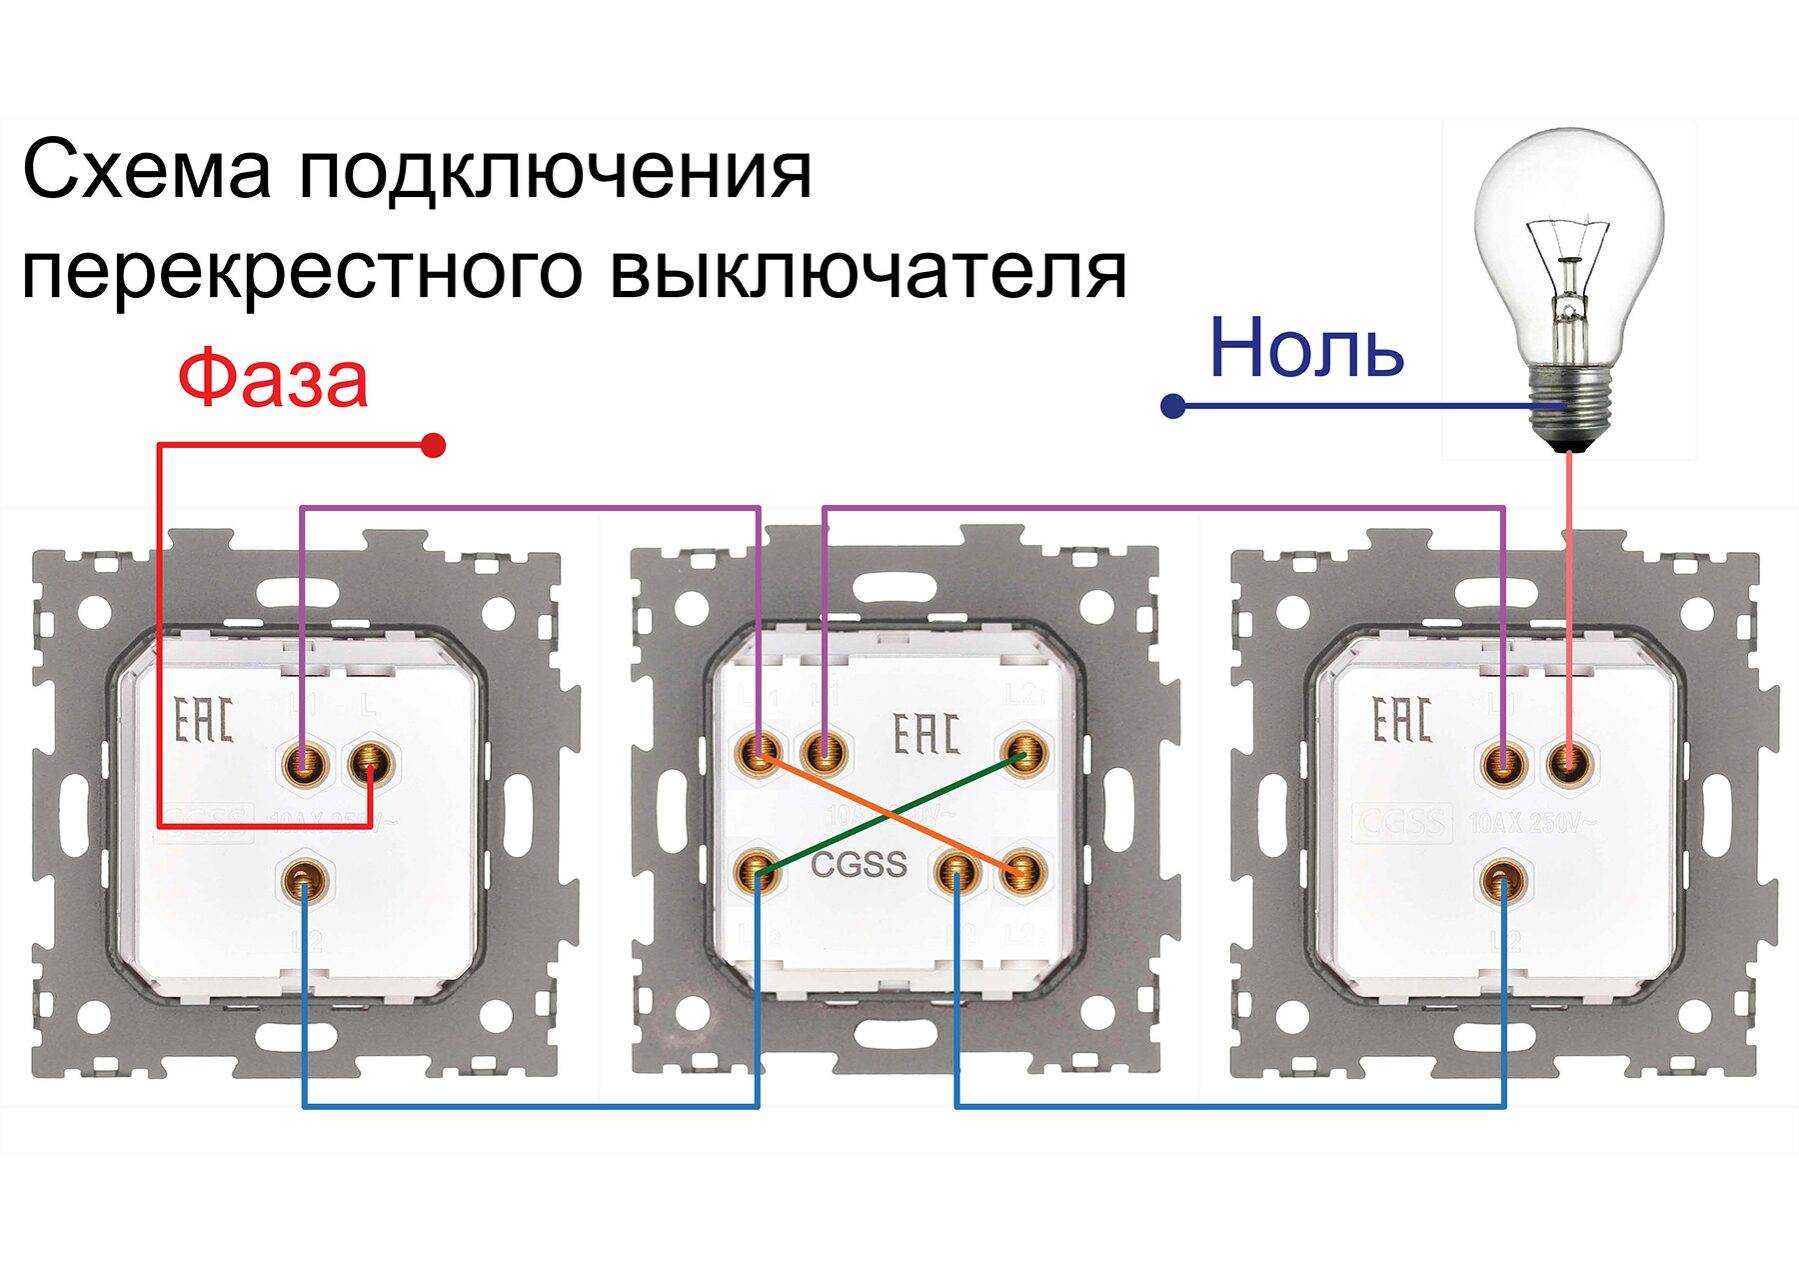 Монтаж выключателя: одноклавишный утопленного типа при скрытой проводке в железноводске (монтаж наладка и ремонт электроснабжения)